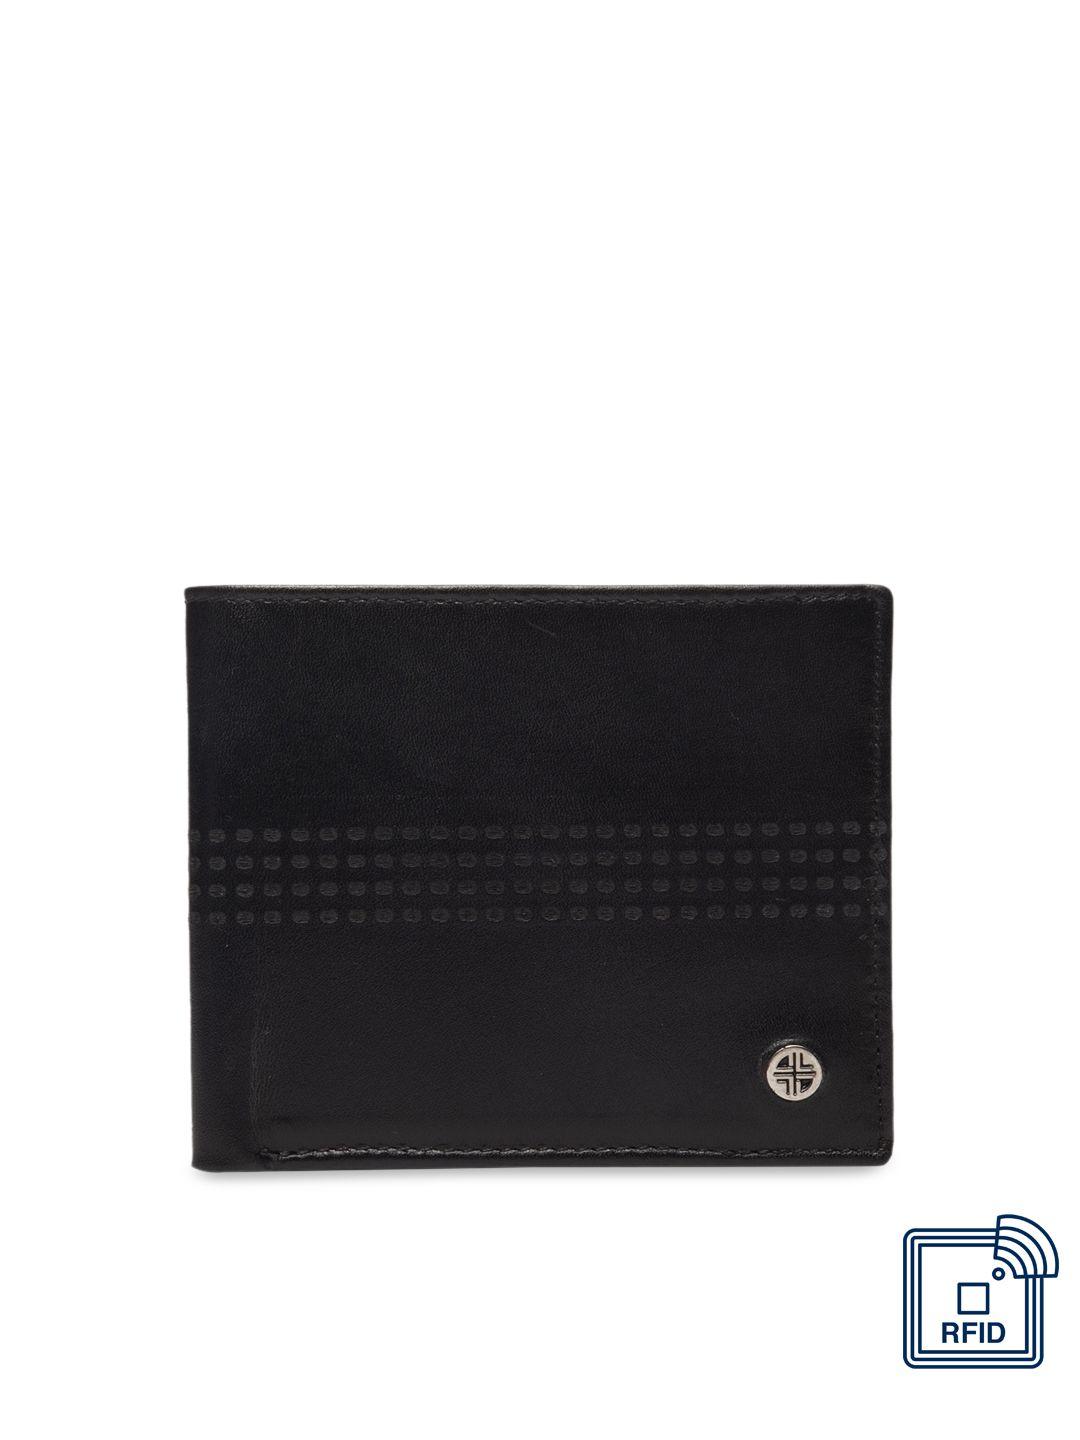 carlton london men black & maroon rfid leather two fold wallet